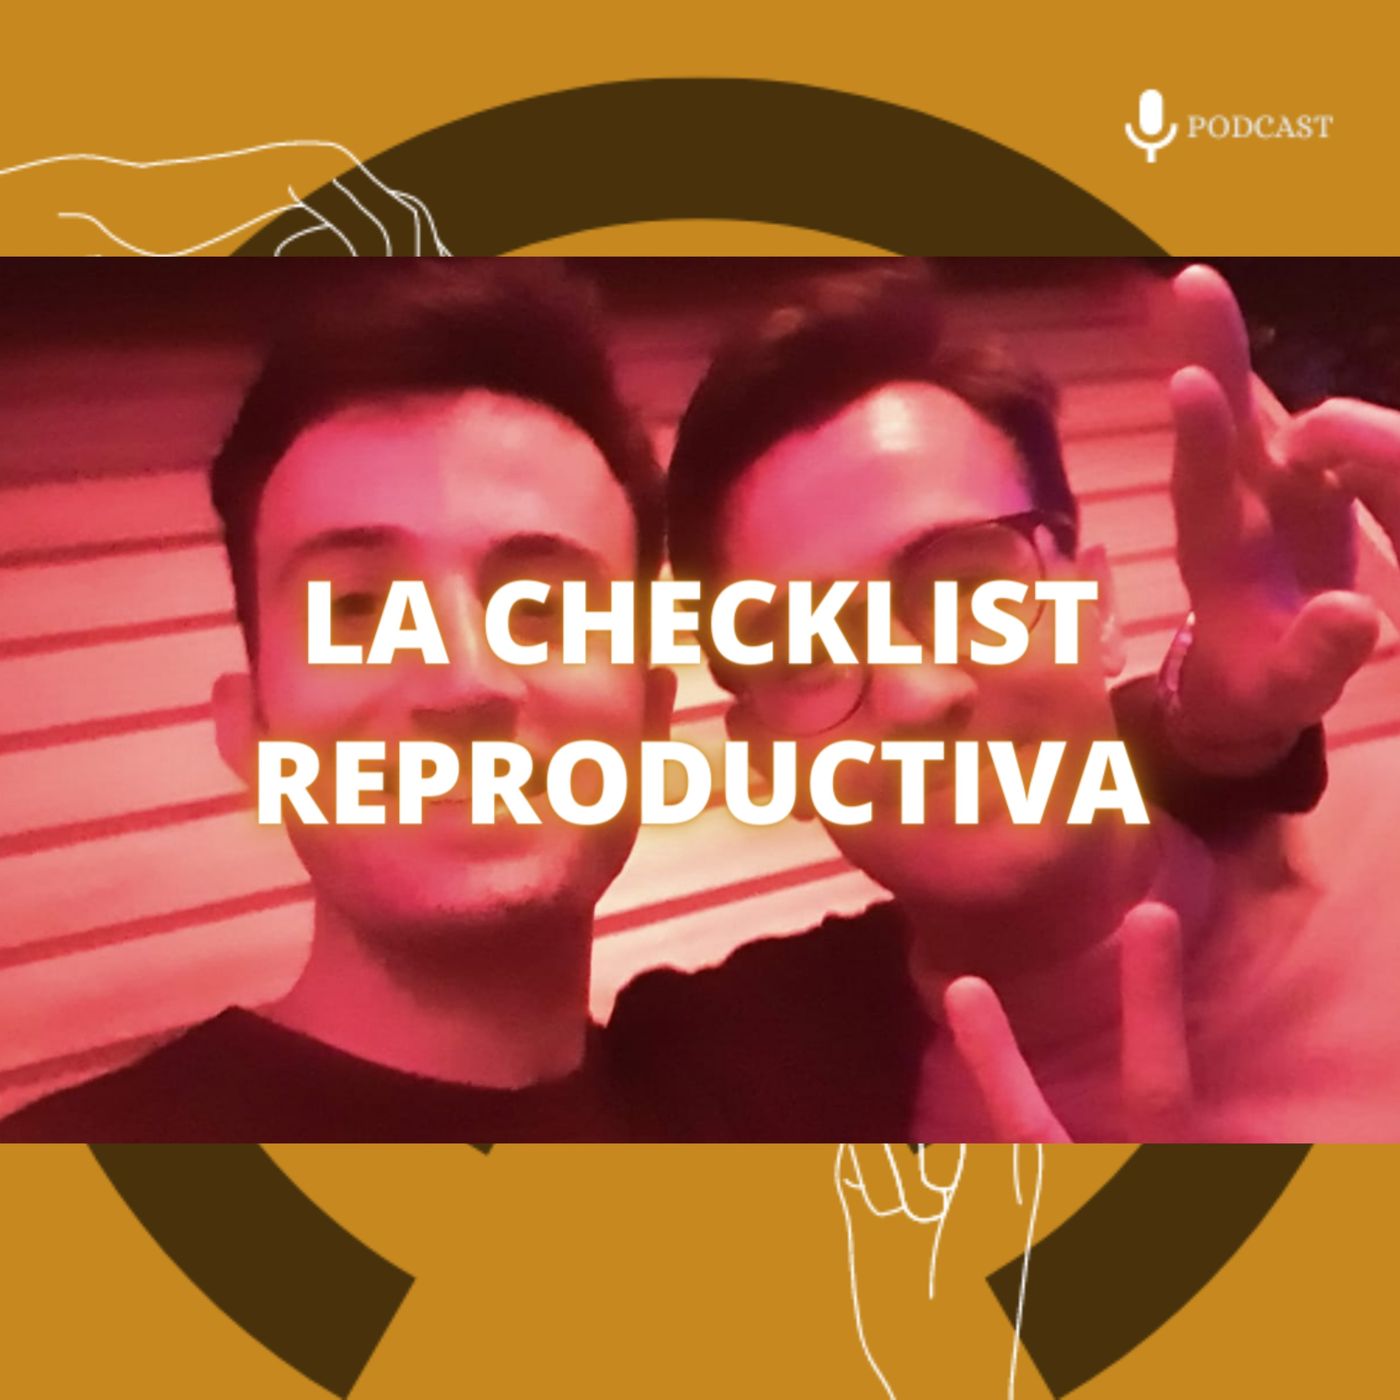 95. La checklist reproductiva